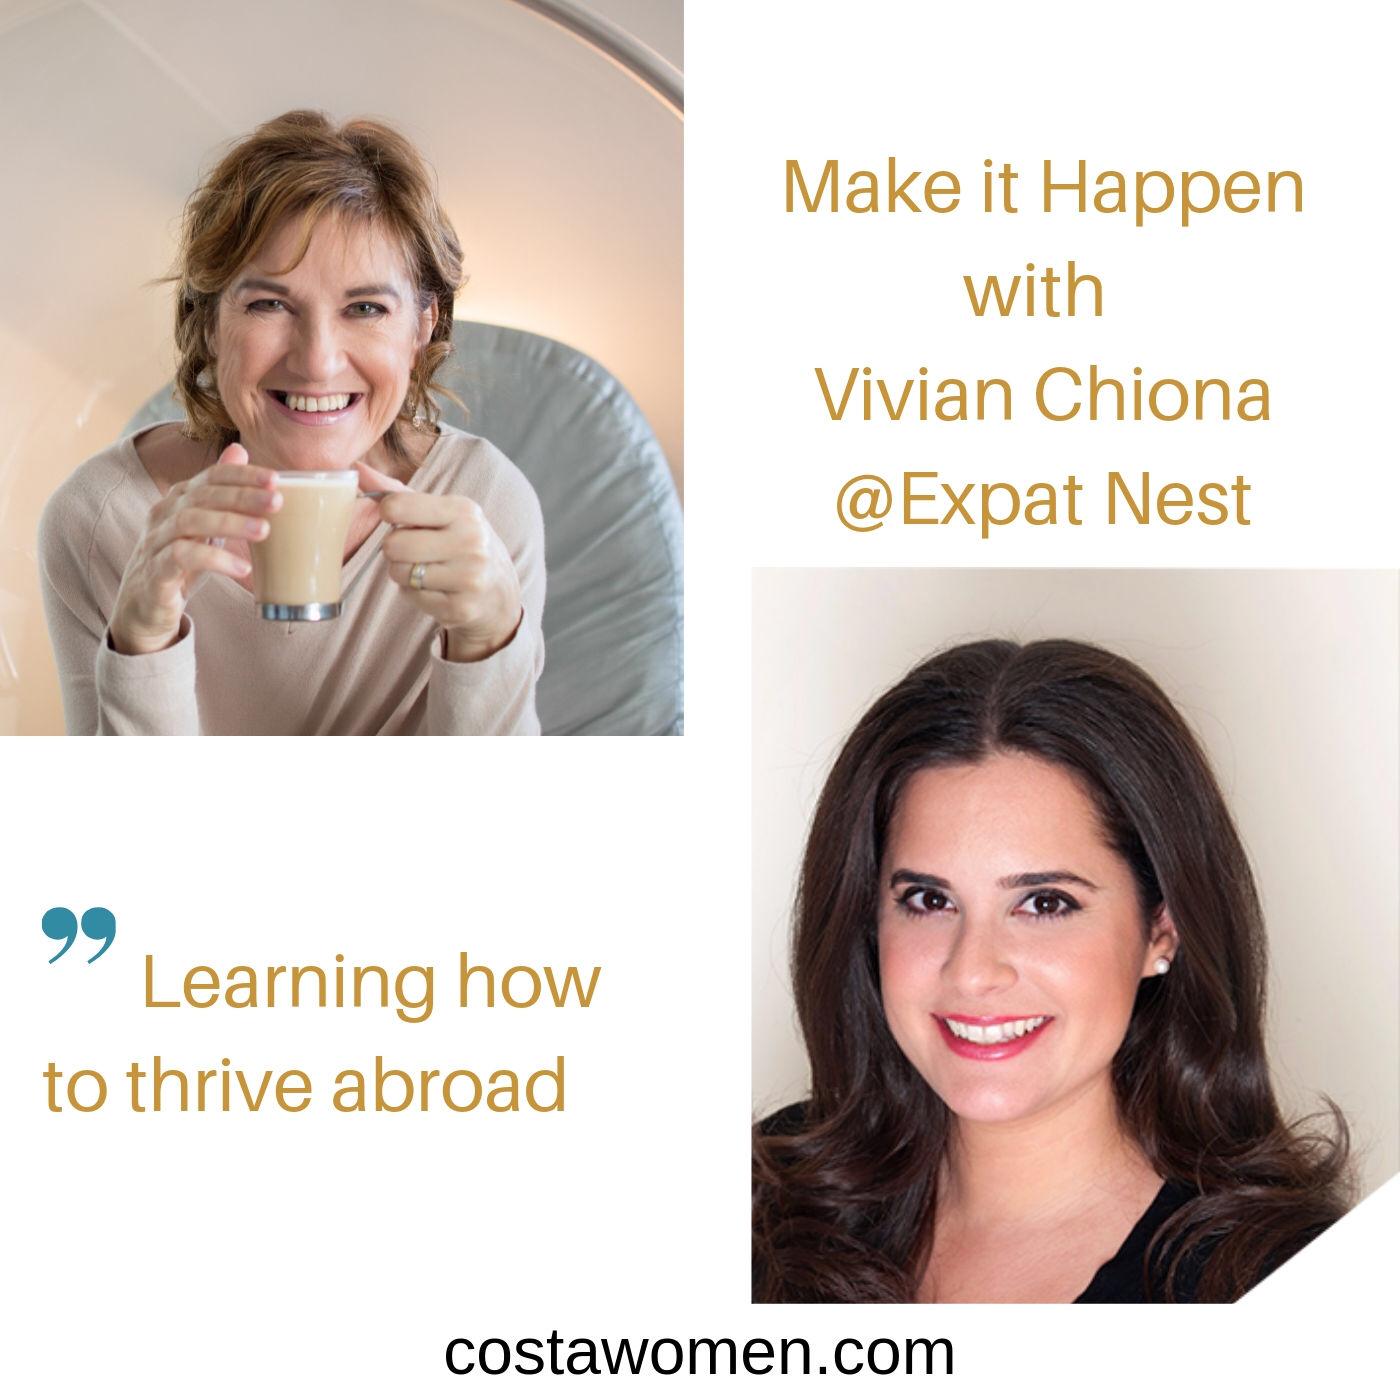 interview-vivian-chiona-make-it-happen-expat-nest